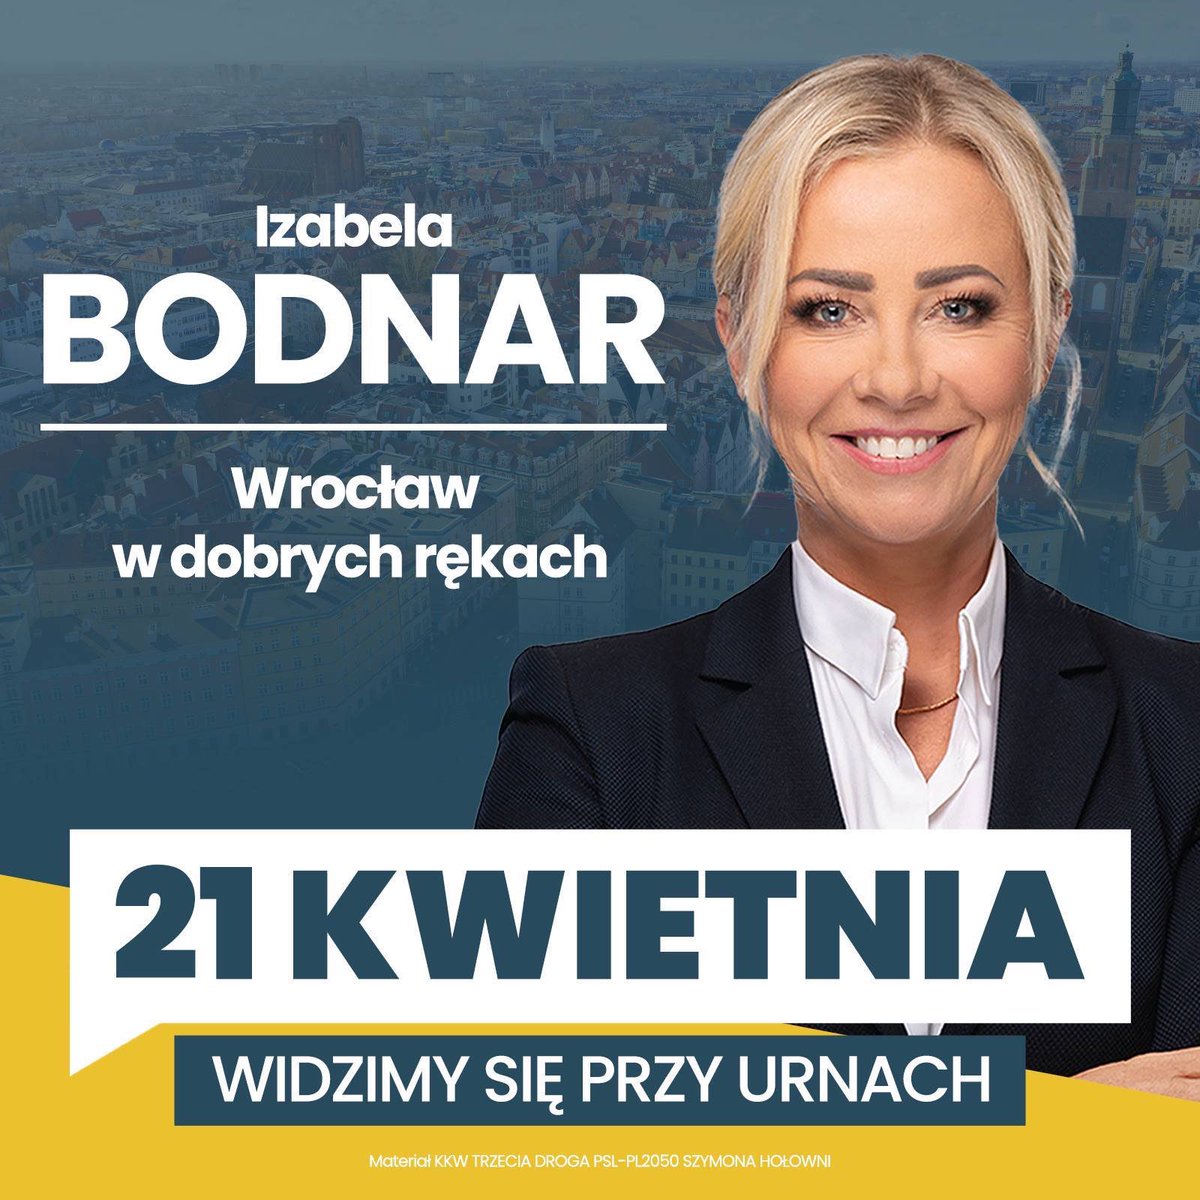 Wrocław ma tę szansę, której niestety nie ma Poznań - może wybrać świetną prezydentkę! Drodzy znajomi z Wrocławia, szczerze polecam oddanie głosu na @BodnarIzabela